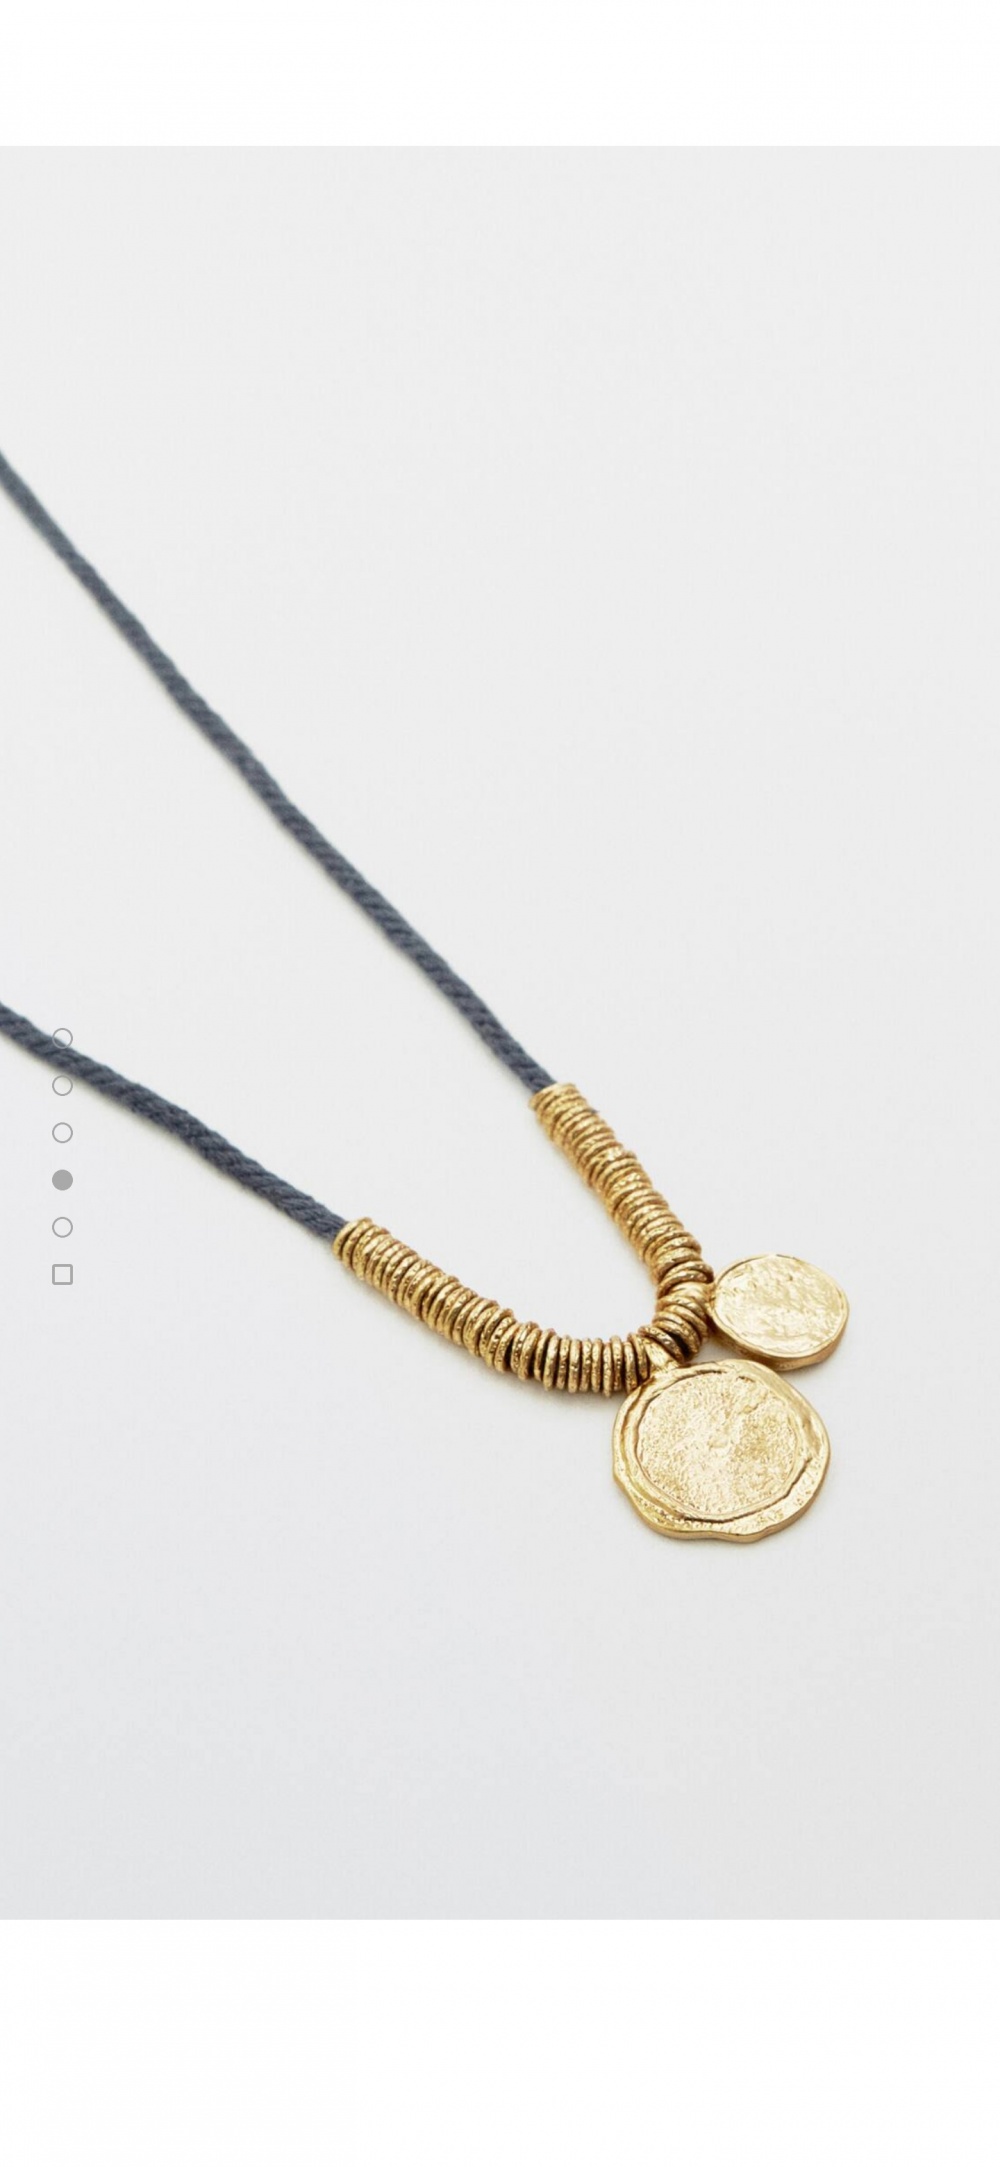 Massimo Dutti позолоченная цепочка с двумя монетами